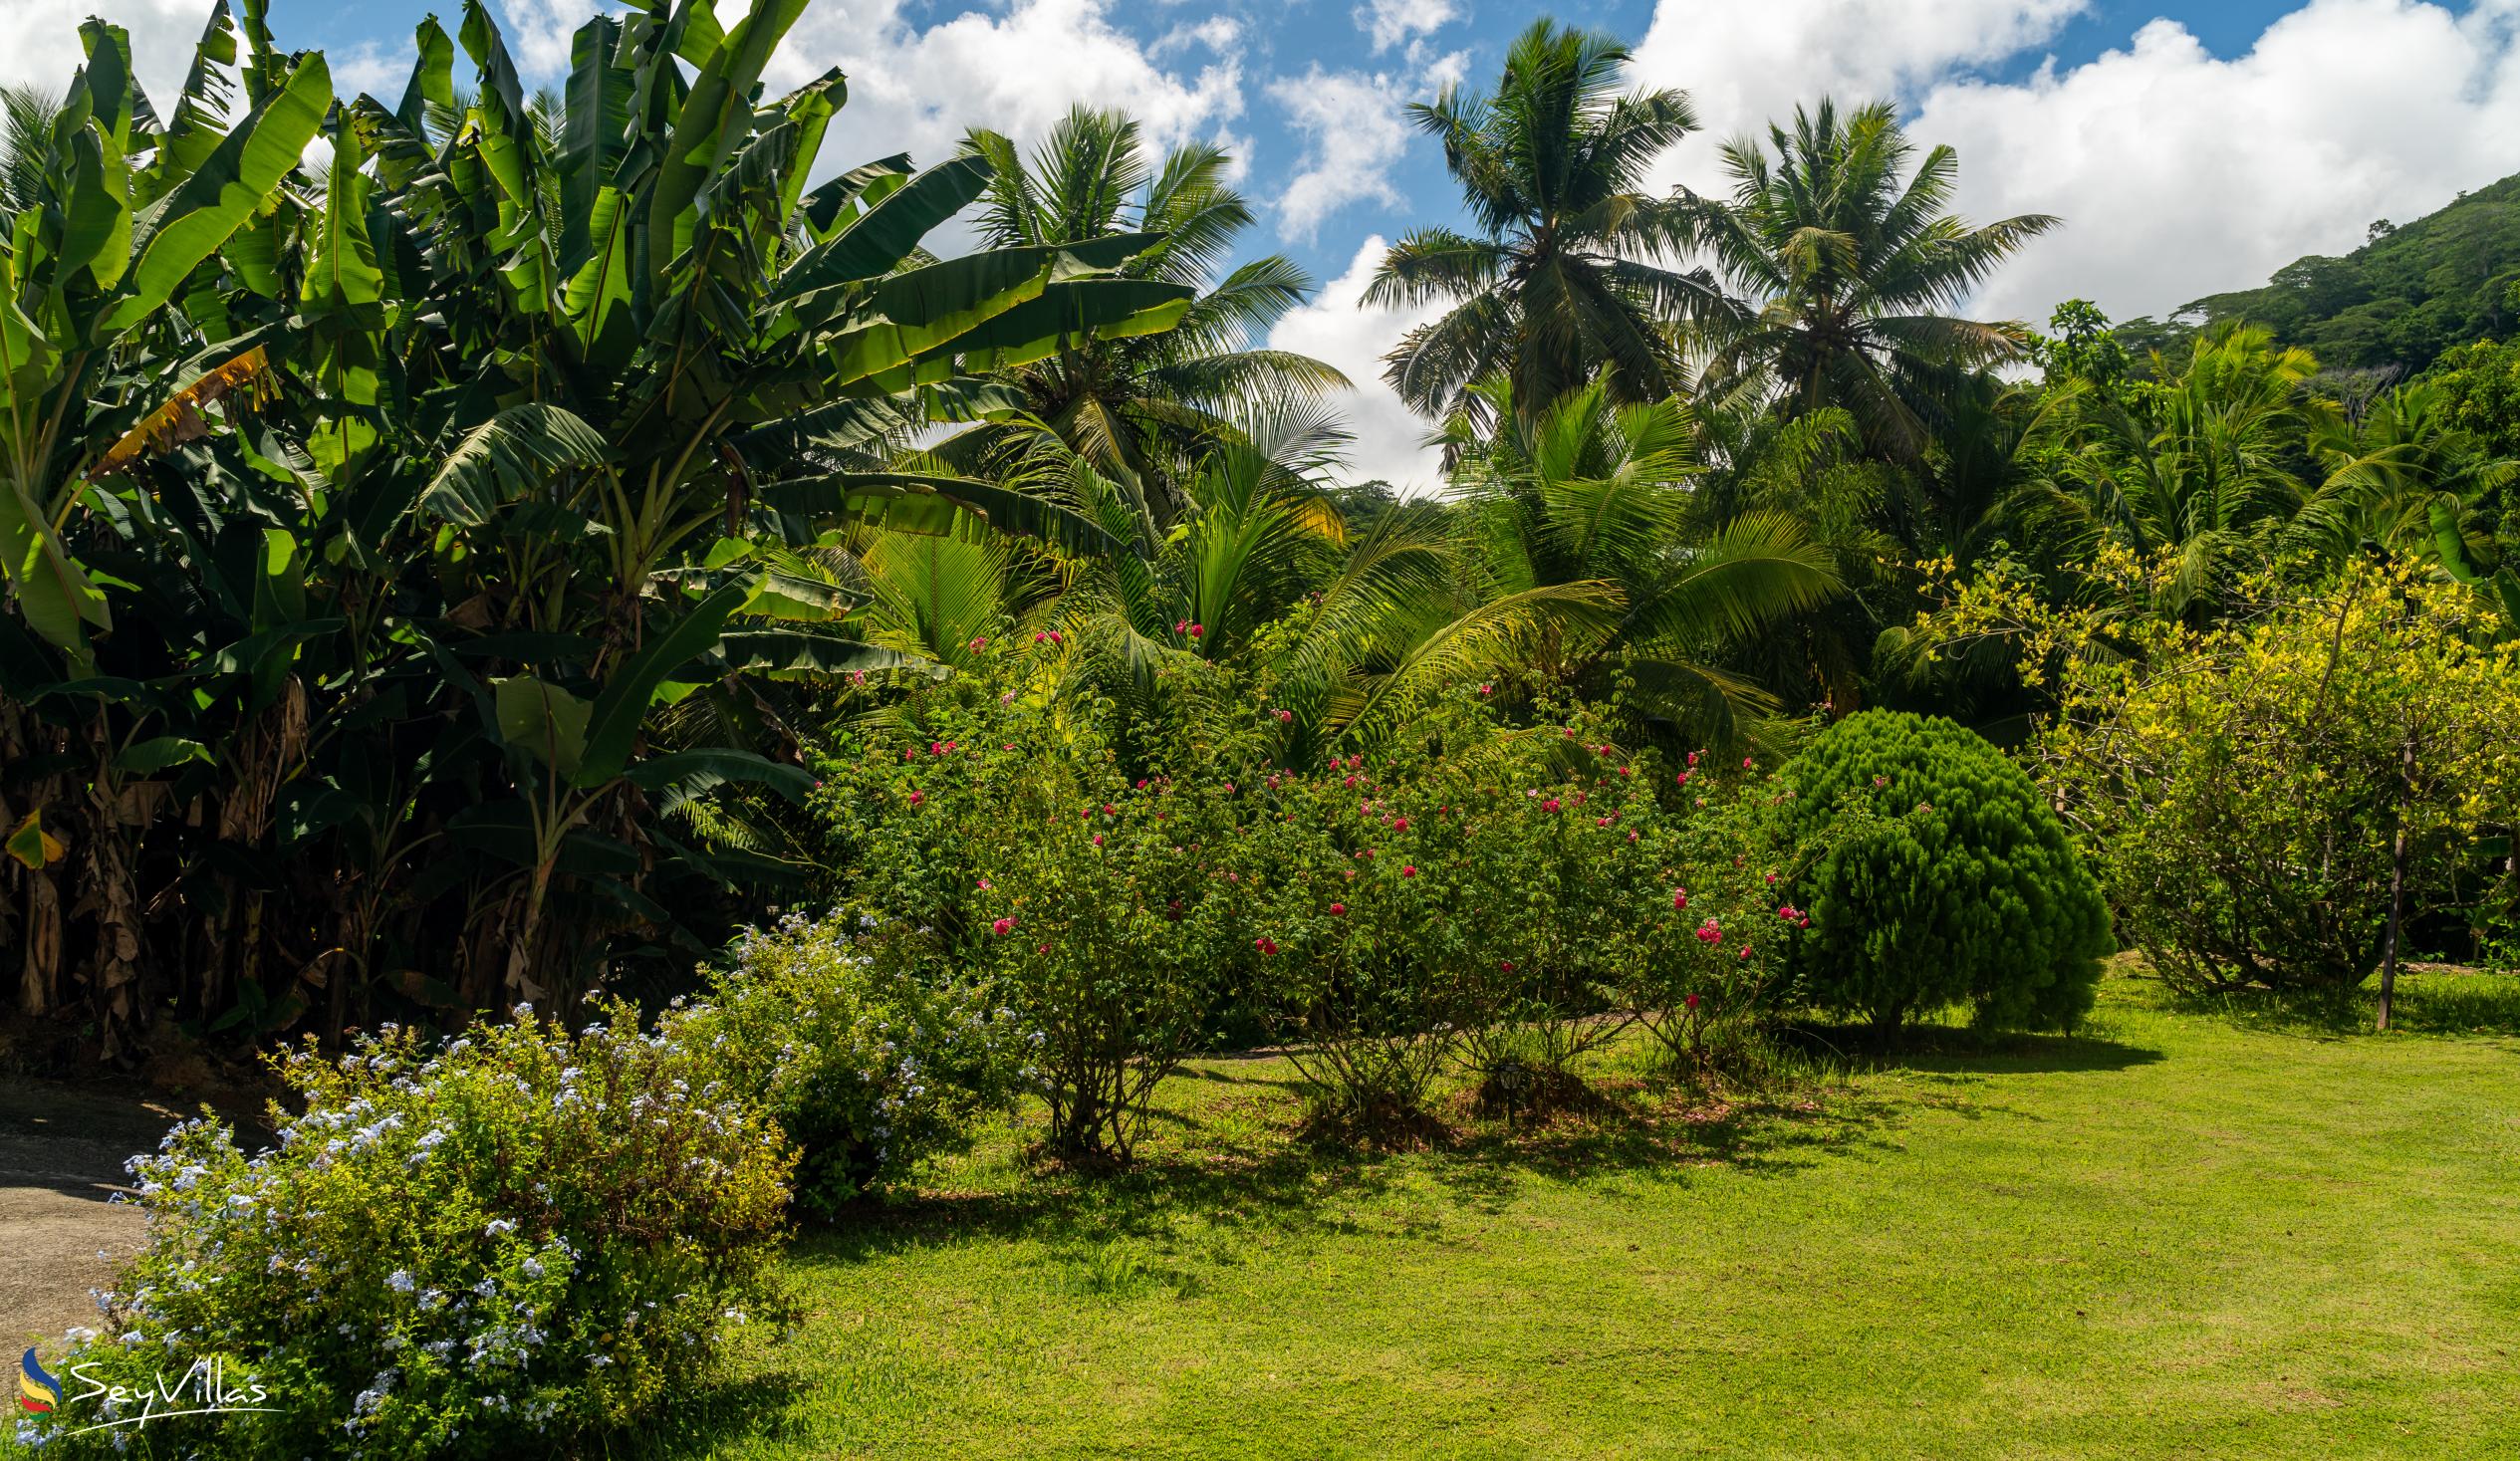 Photo 11: Paul's Residence - Outdoor area - Mahé (Seychelles)